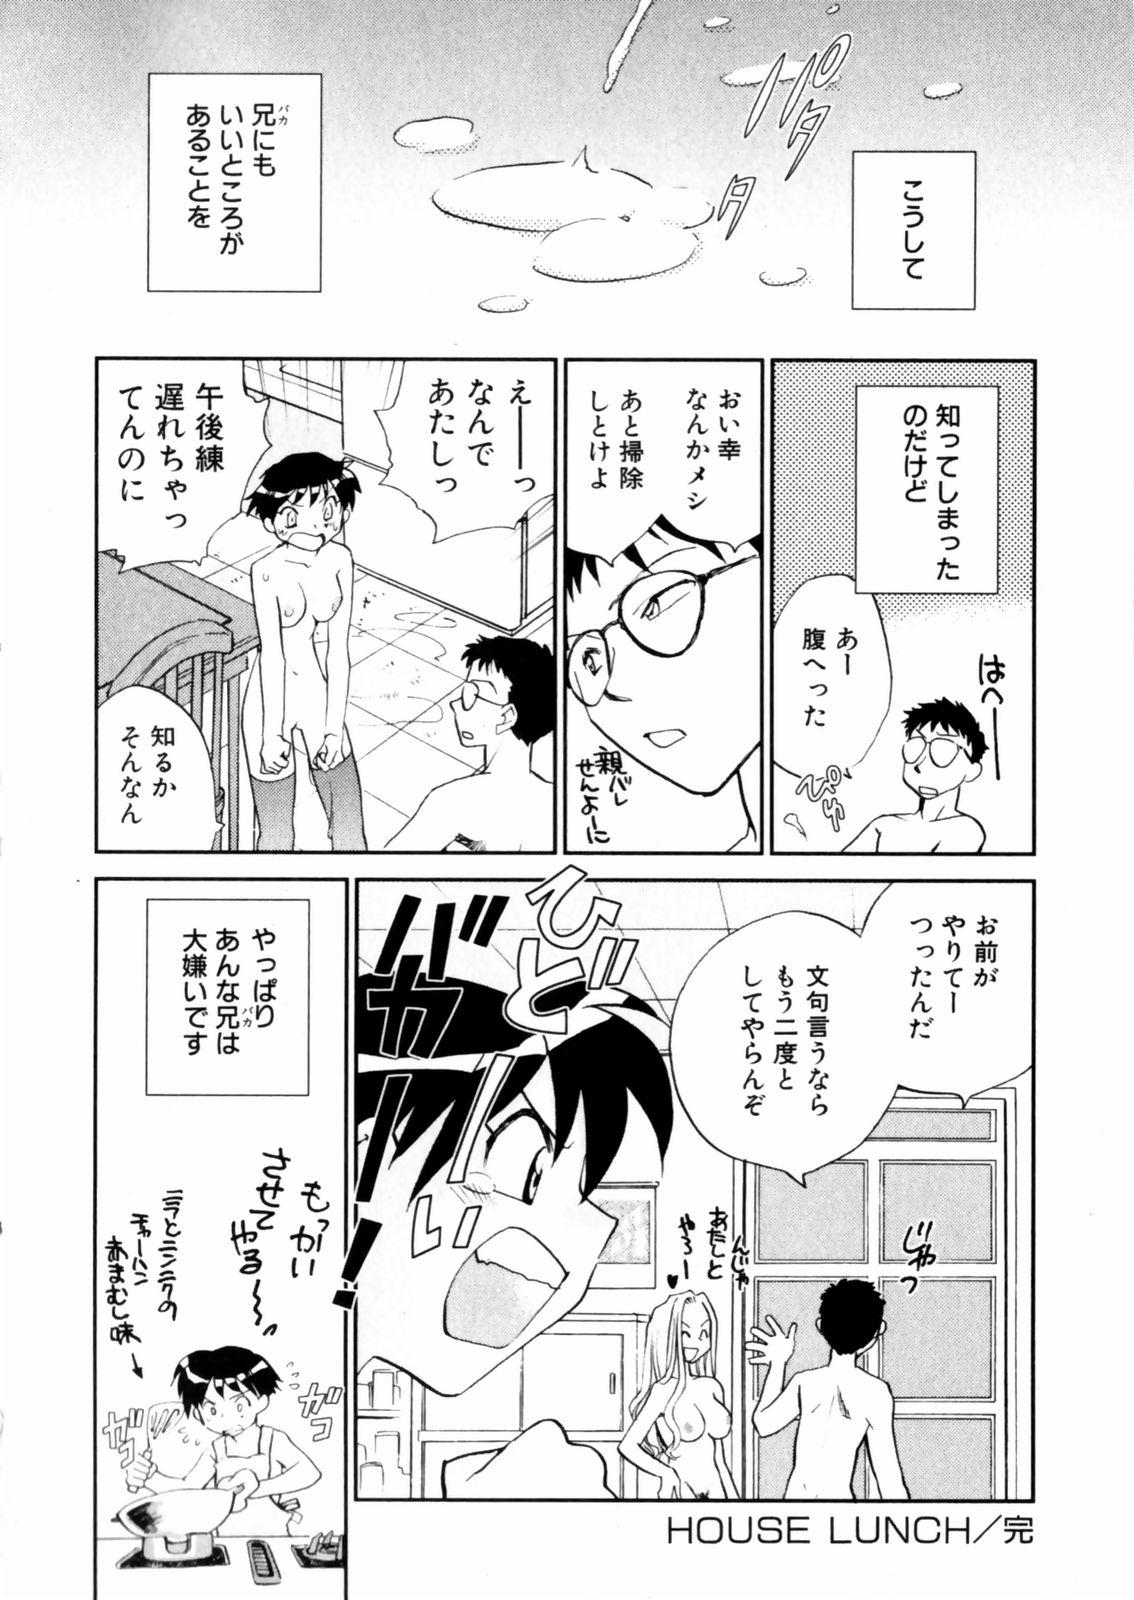 [Okano Ahiru] Hanasake ! Otome Juku (Otome Private Tutoring School) Vol.2 161